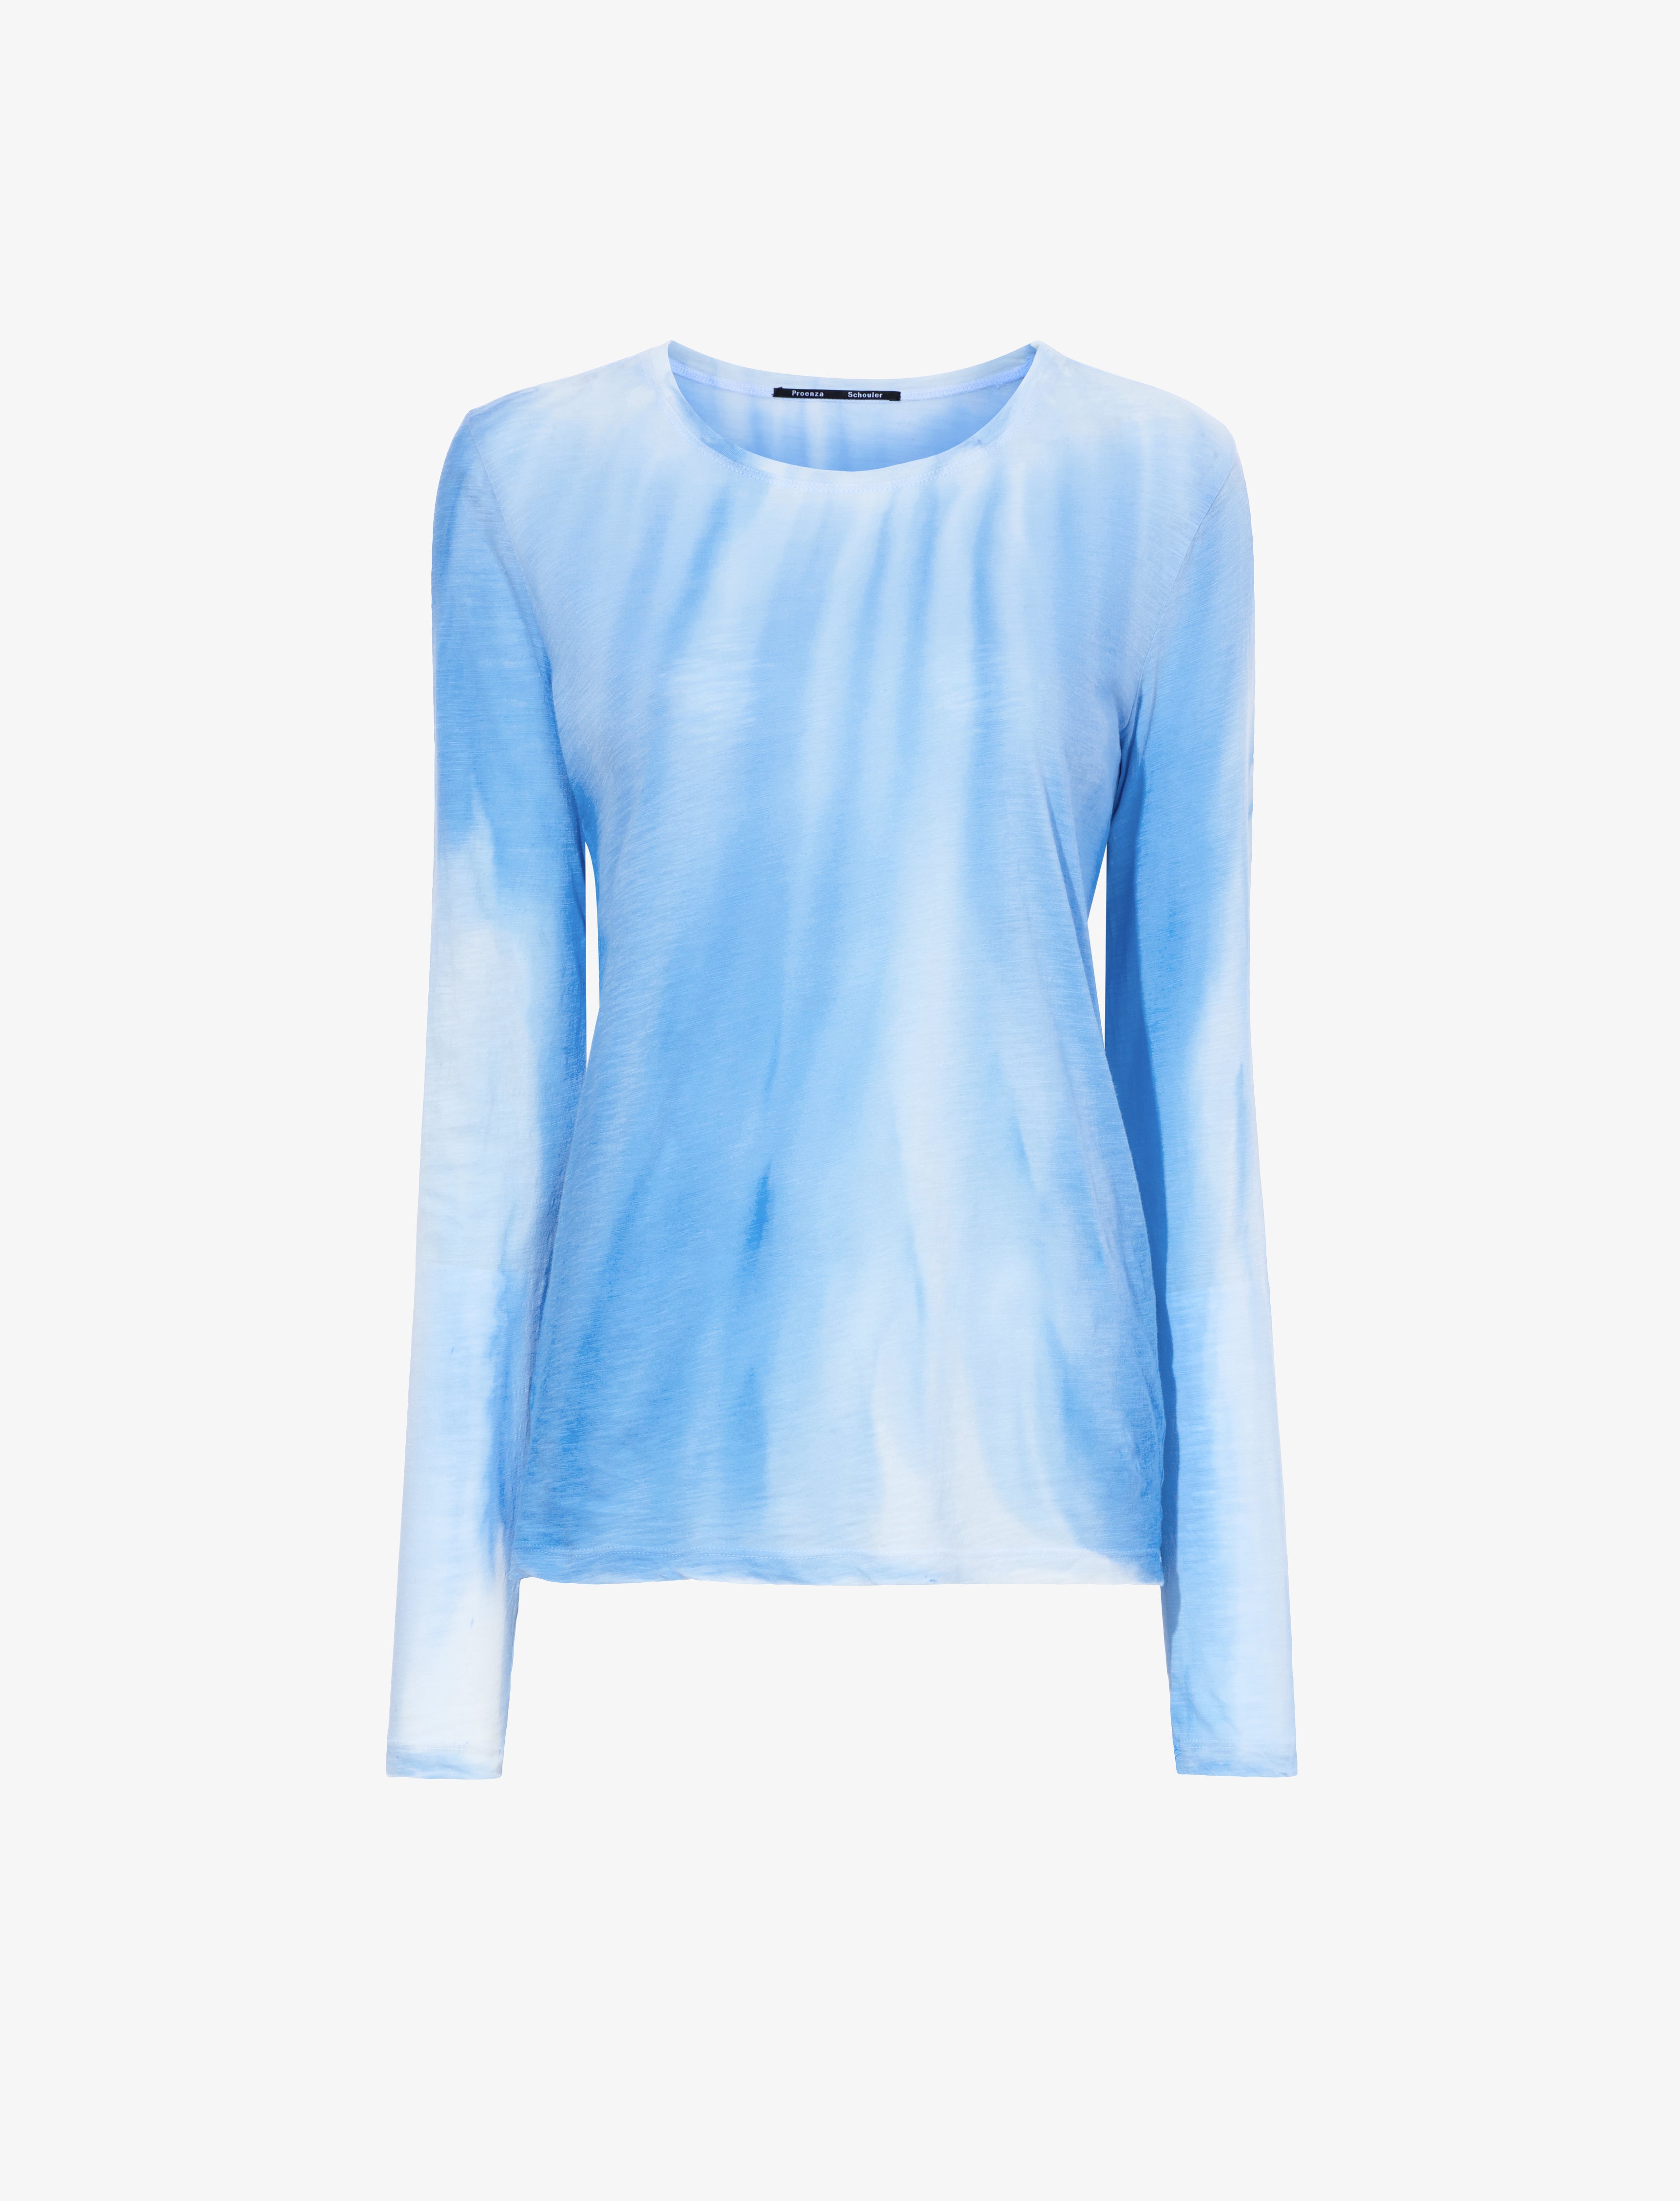 Proenza Schouler Ice Dyed T-Shirt - Blue Multi | Proenza Schouler ...